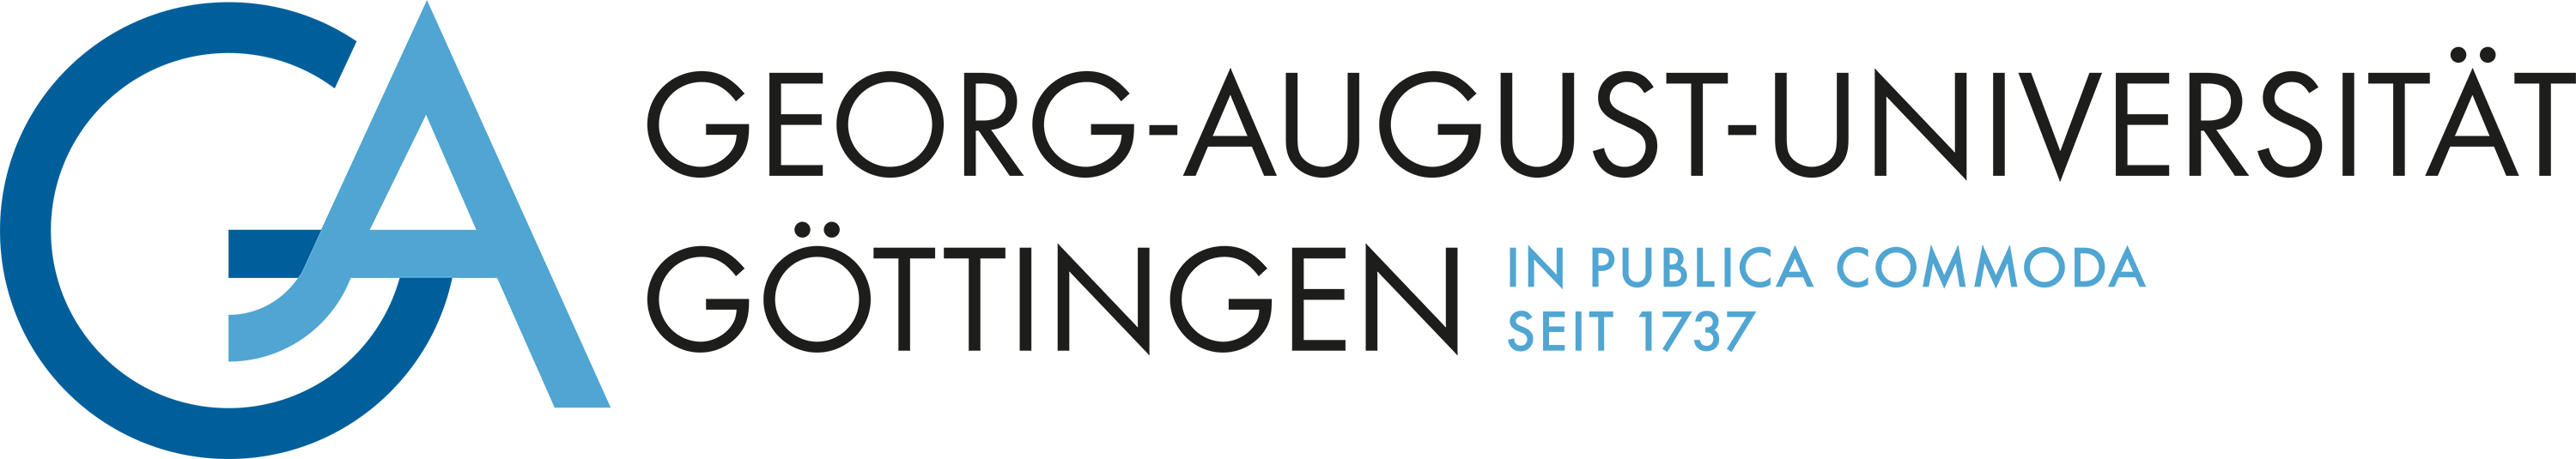 Professur W2 - Trainings- und Bewegungswissenschaft - Georg-August-Universität Göttingen - Universität Göttingen - Logo